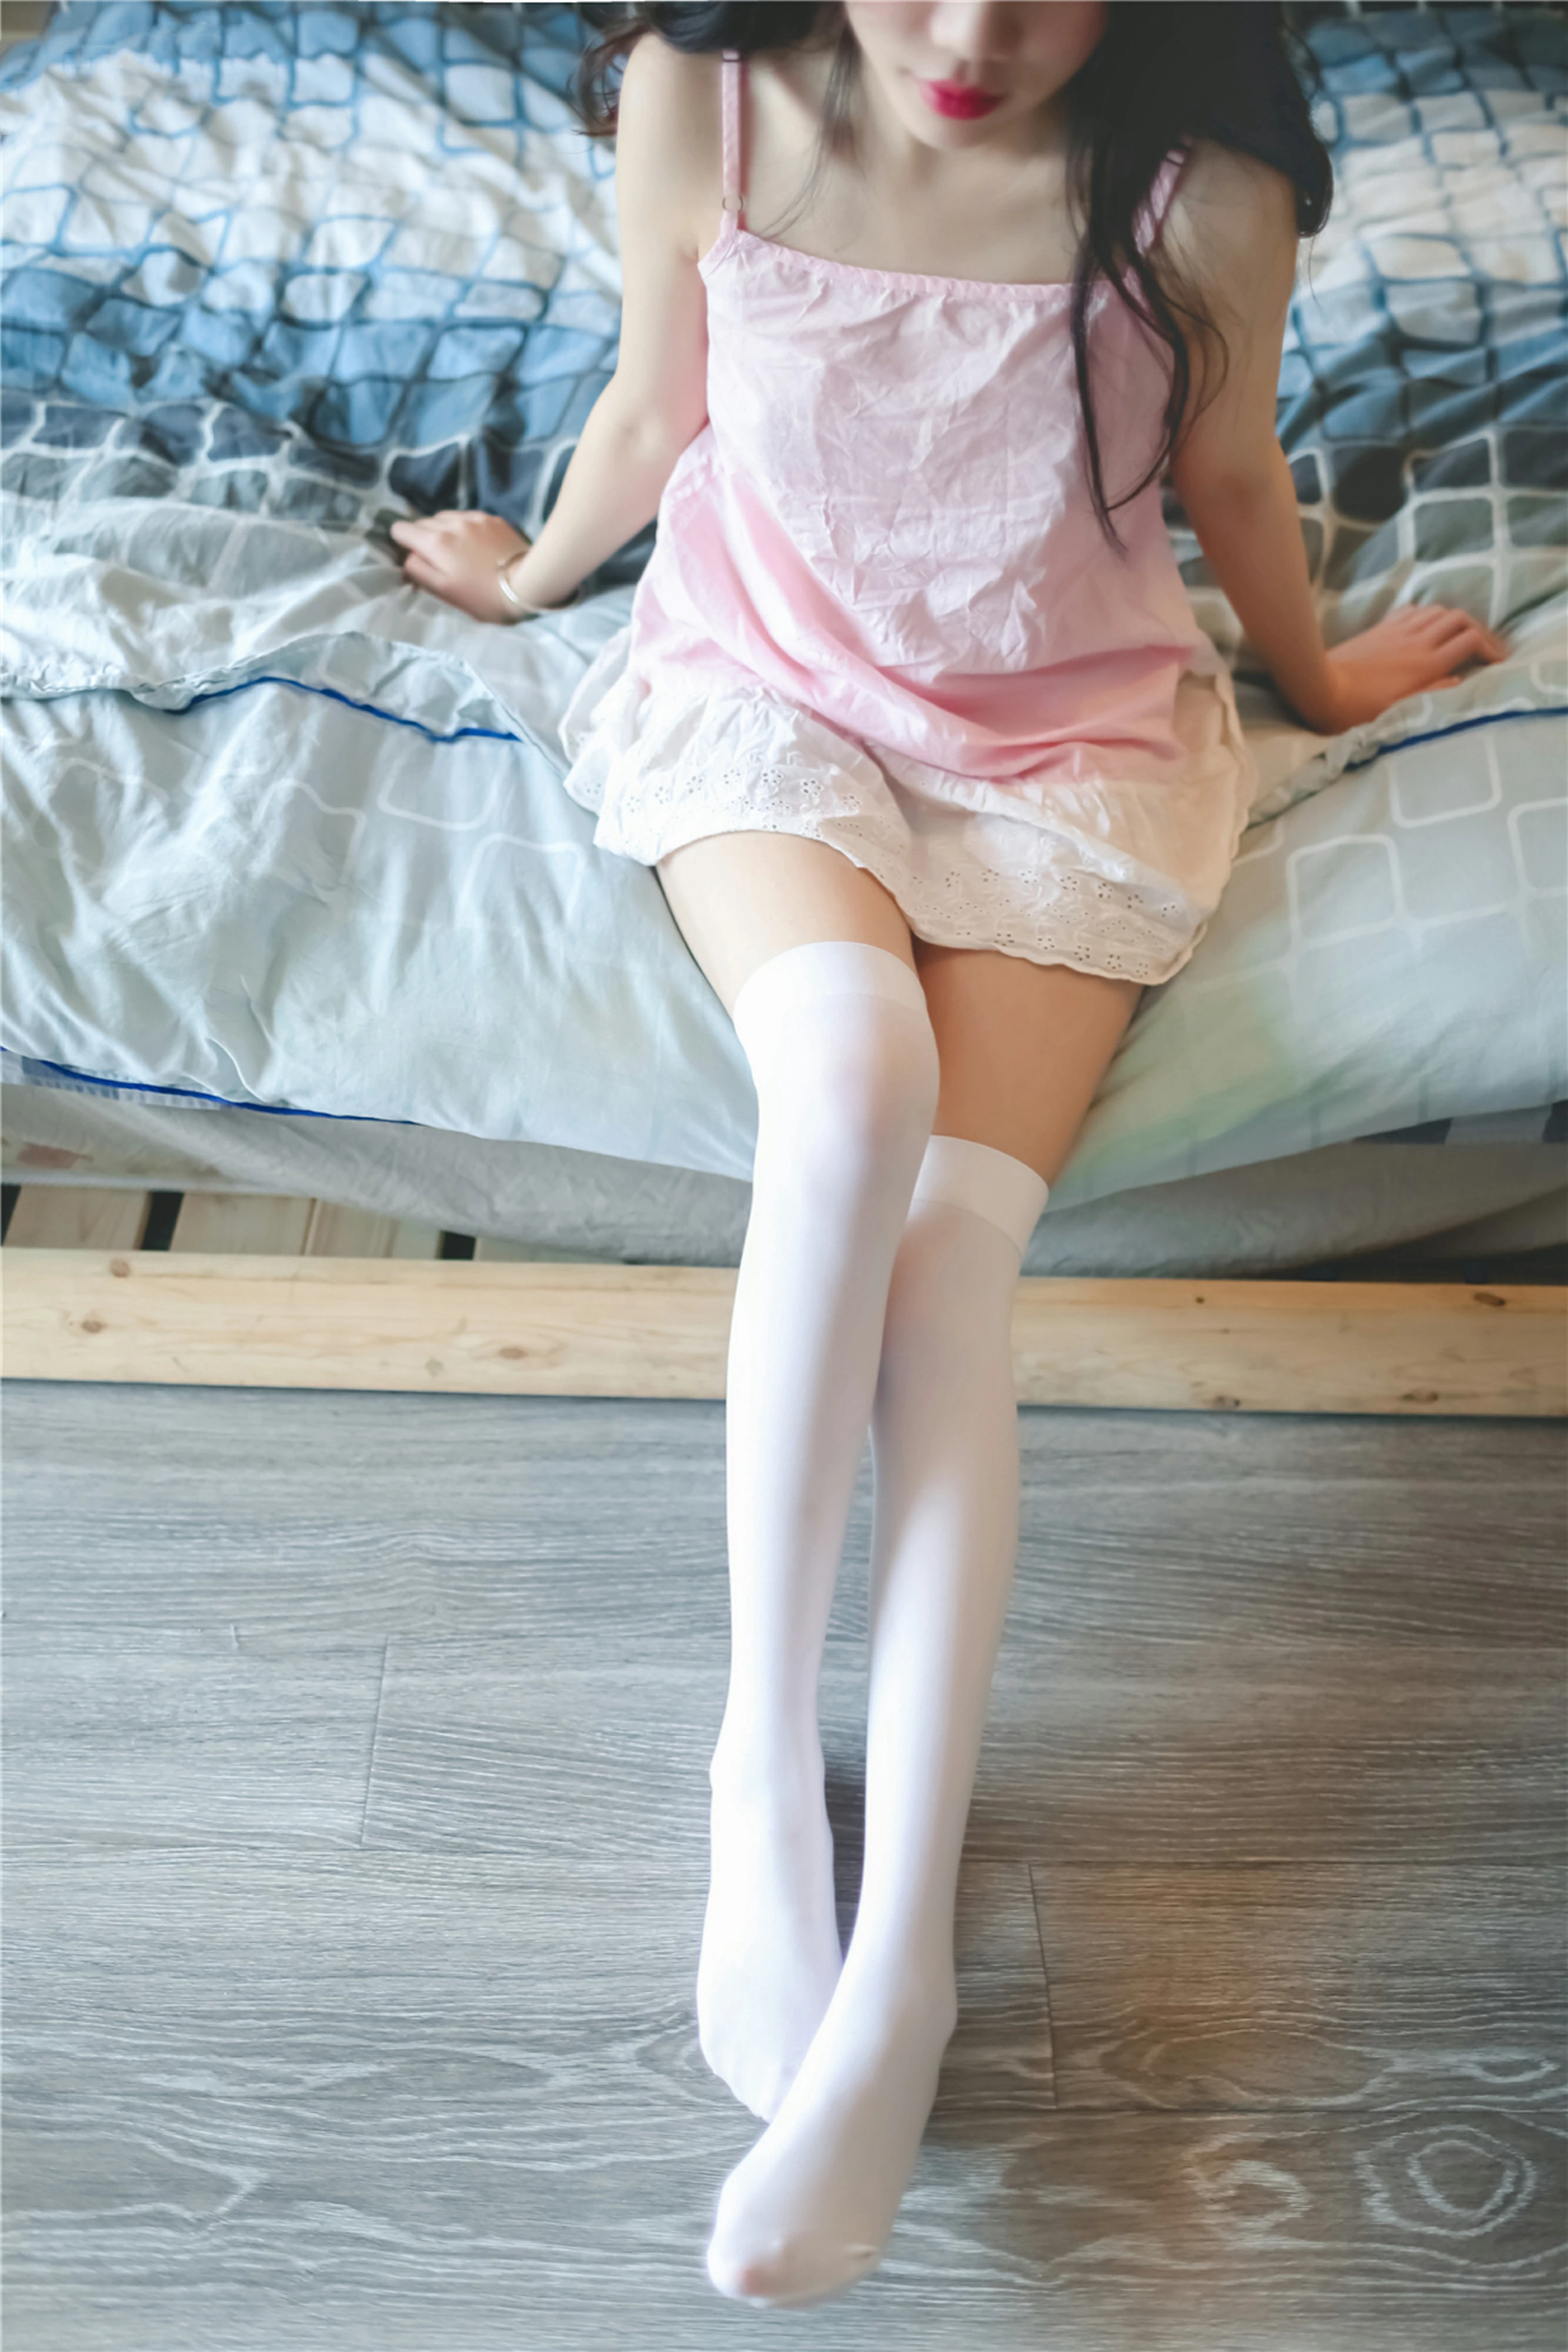 [风之领域]NO.110 性感美女 粉色背心与白色短裙加白色丝袜美腿私房写真集,